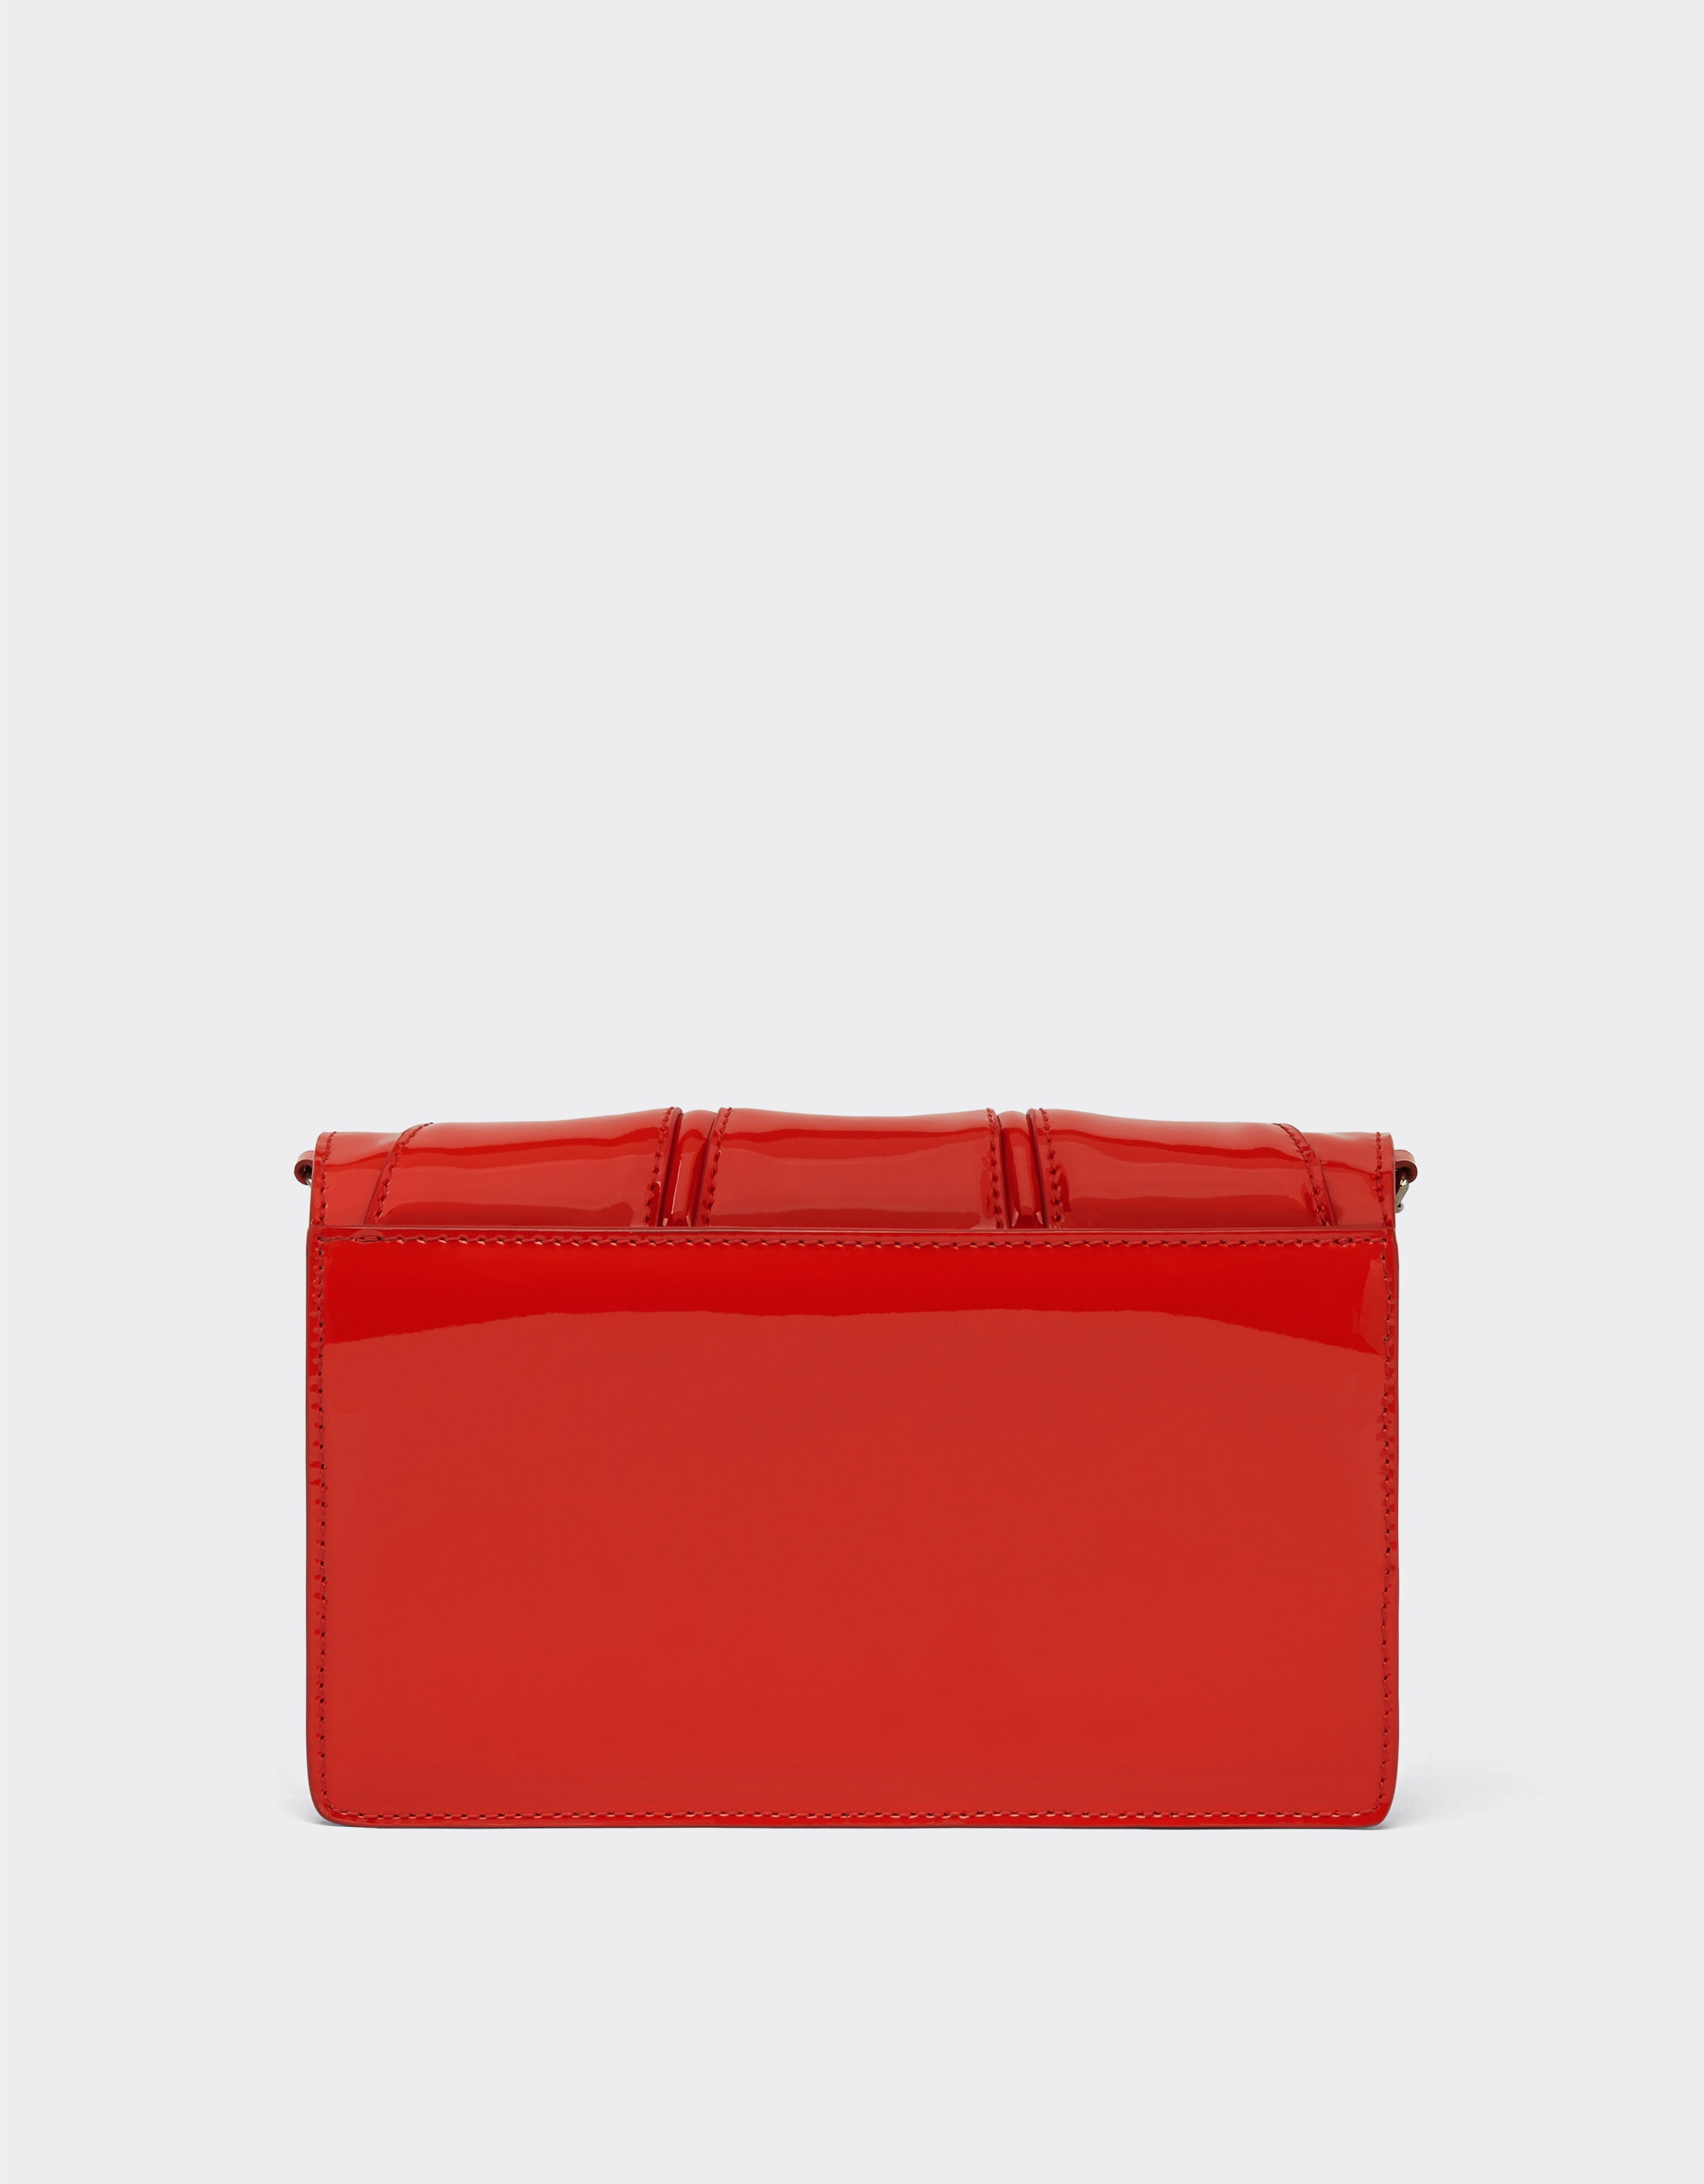 Ferrari Ferrari GT bag in patent leather with chain Rosso Dino 20238f